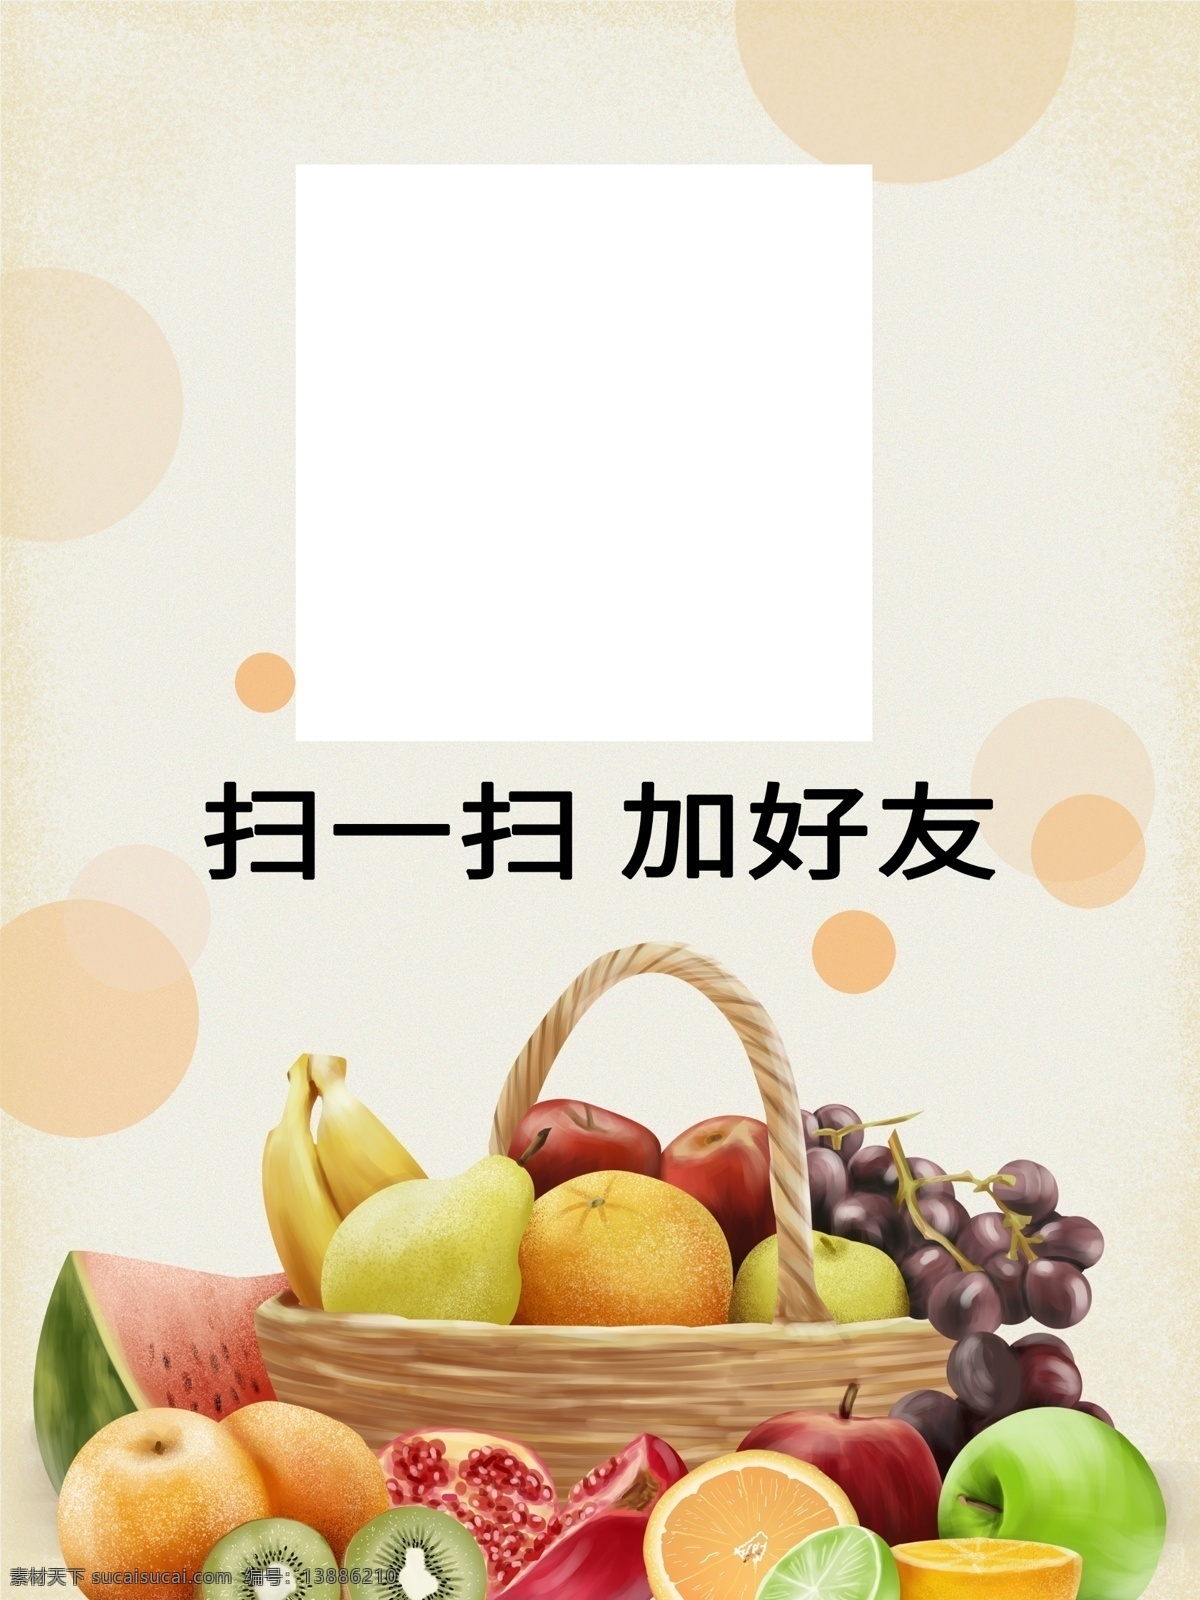 水果店二维码 水果店海报 二维码海报 水果海报 水果促销 水果蔬菜 dm宣传单 果蔬店 果蔬汁 果蔬超市 果蔬超市促销